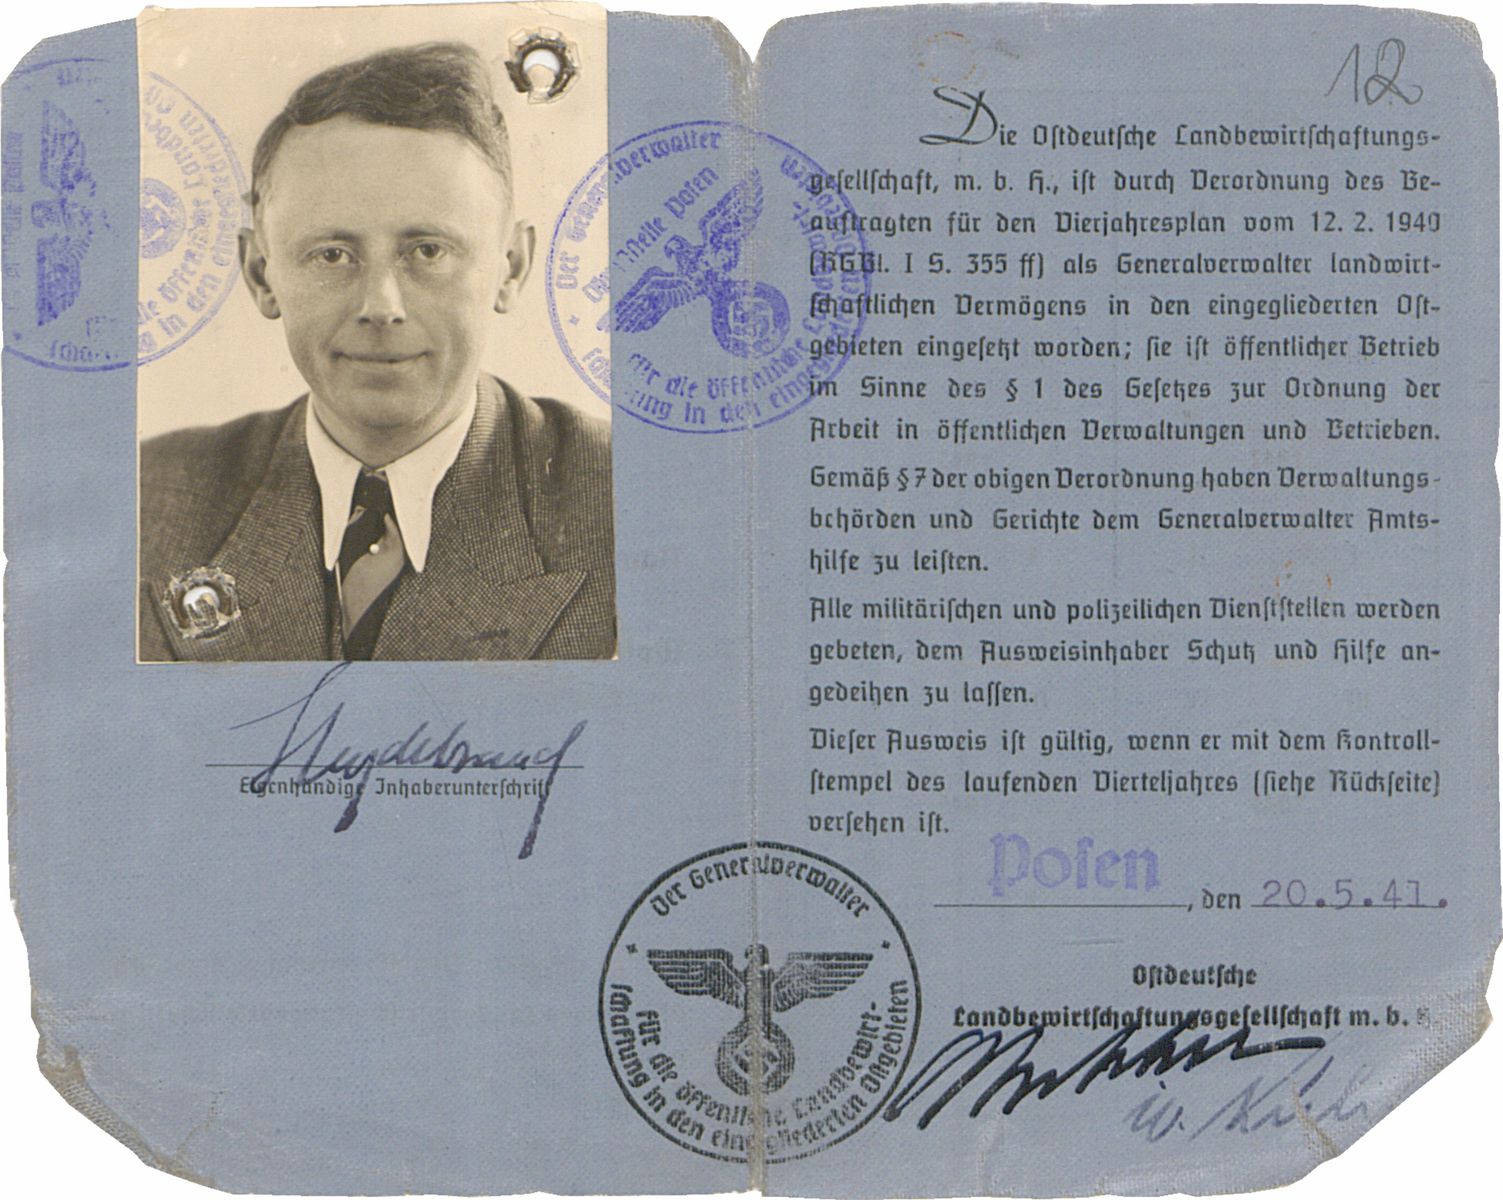 Ausweis Heinza von Heydebranda, wyd. 20 maja 1941, ze zbiorów Instytutu Zachodniego w Poznaniu